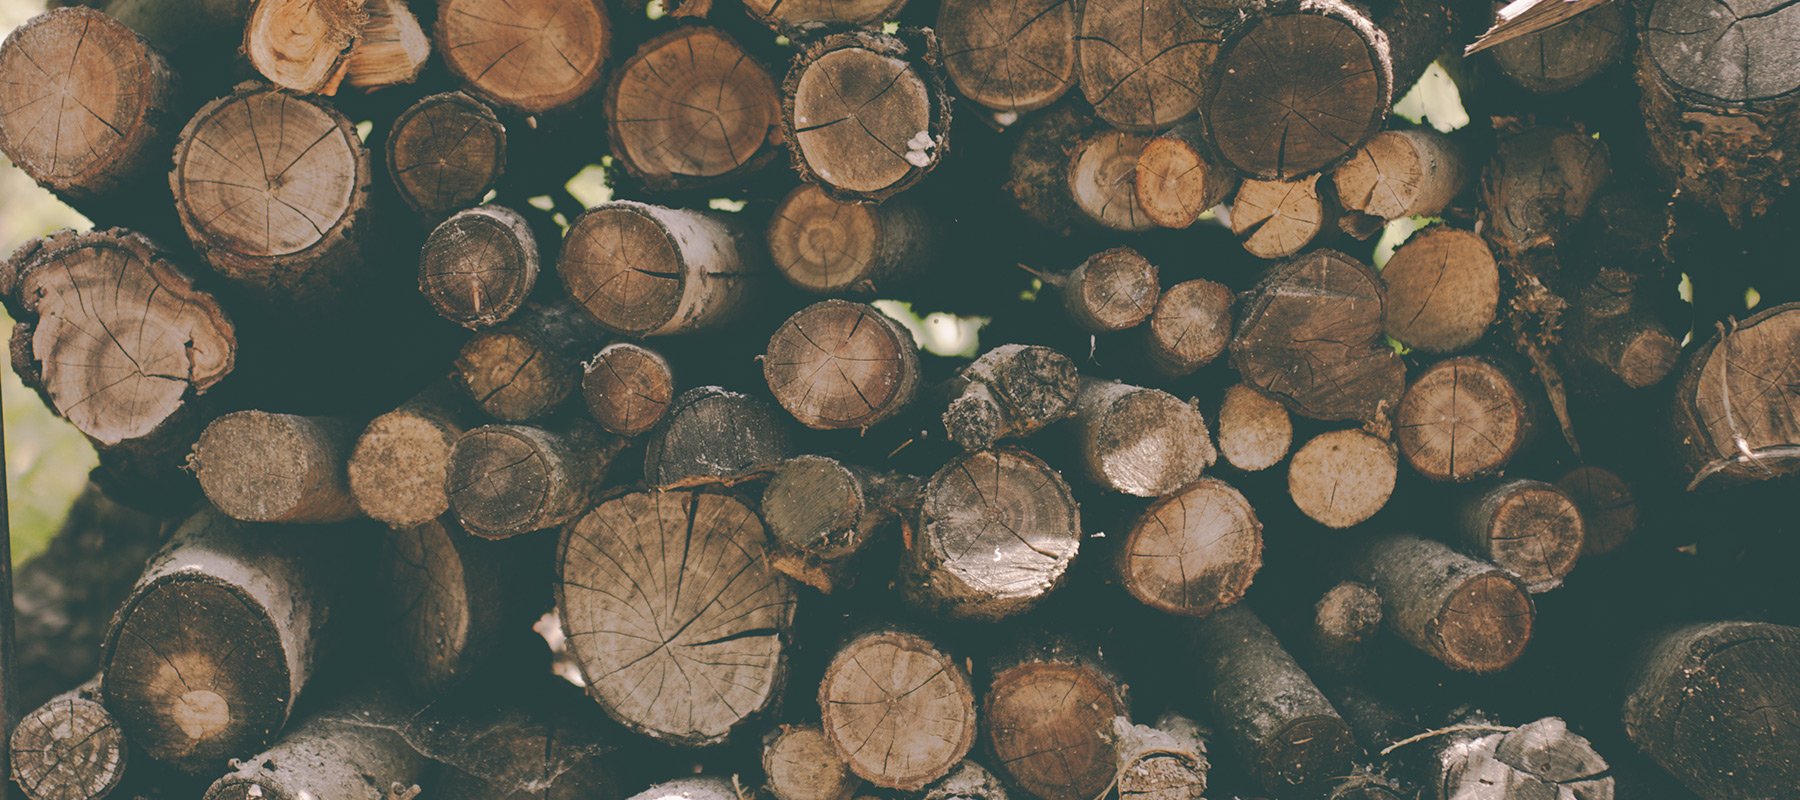 wood-pile